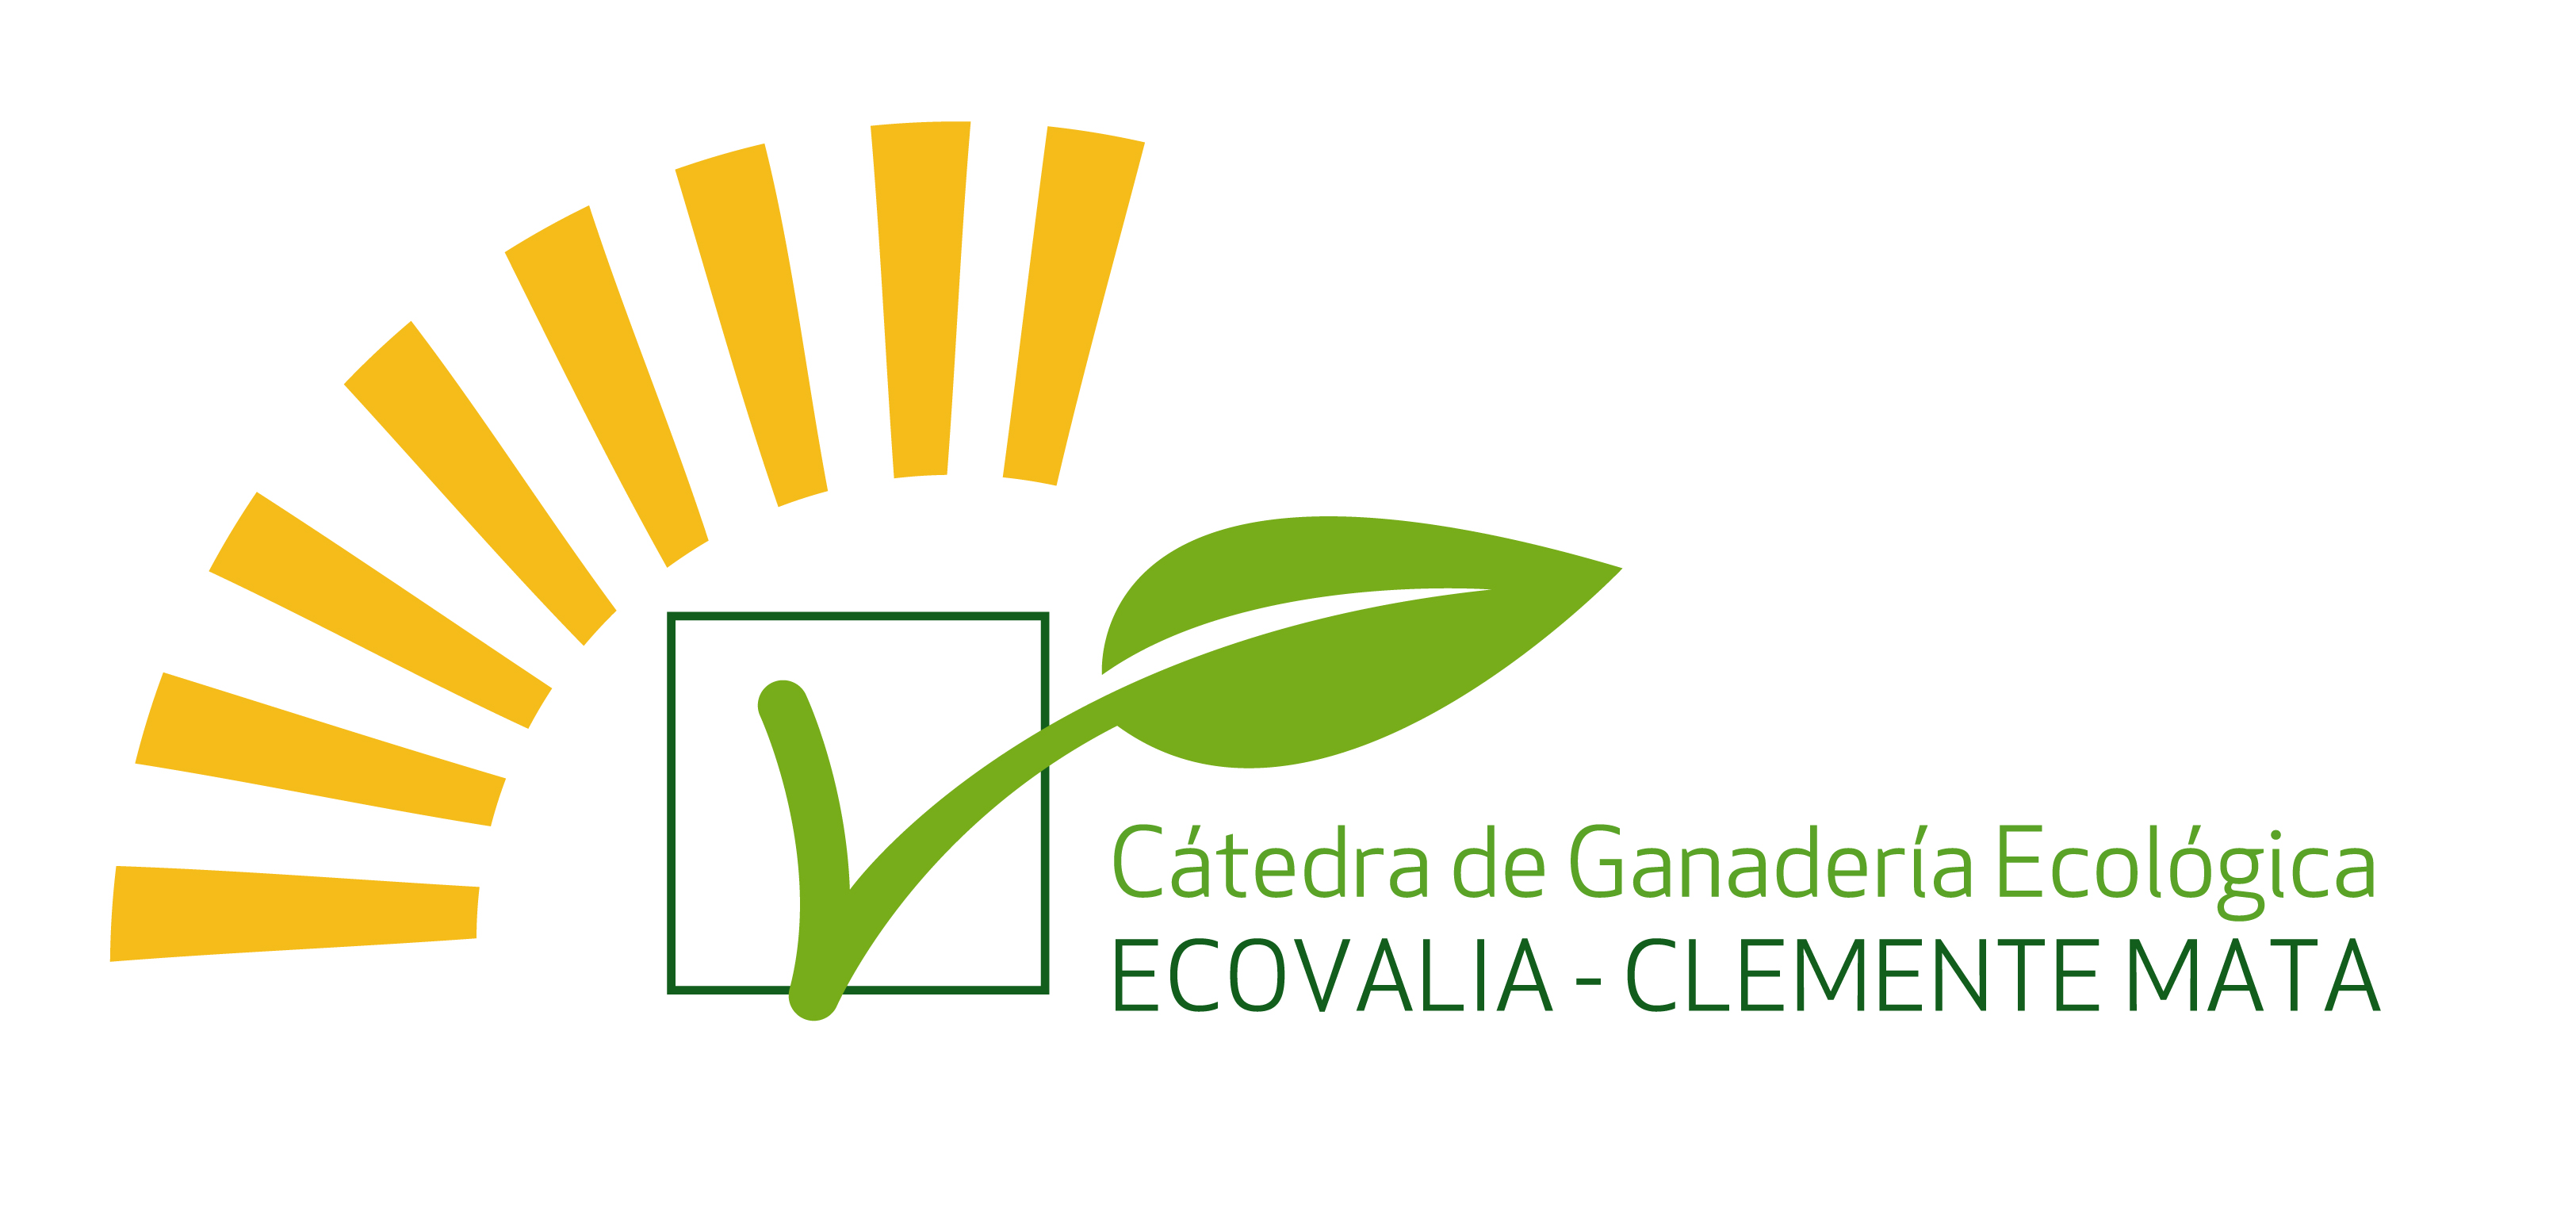 Cátedra de Ganadería Ecológica Ecovalia-Clemente Mata